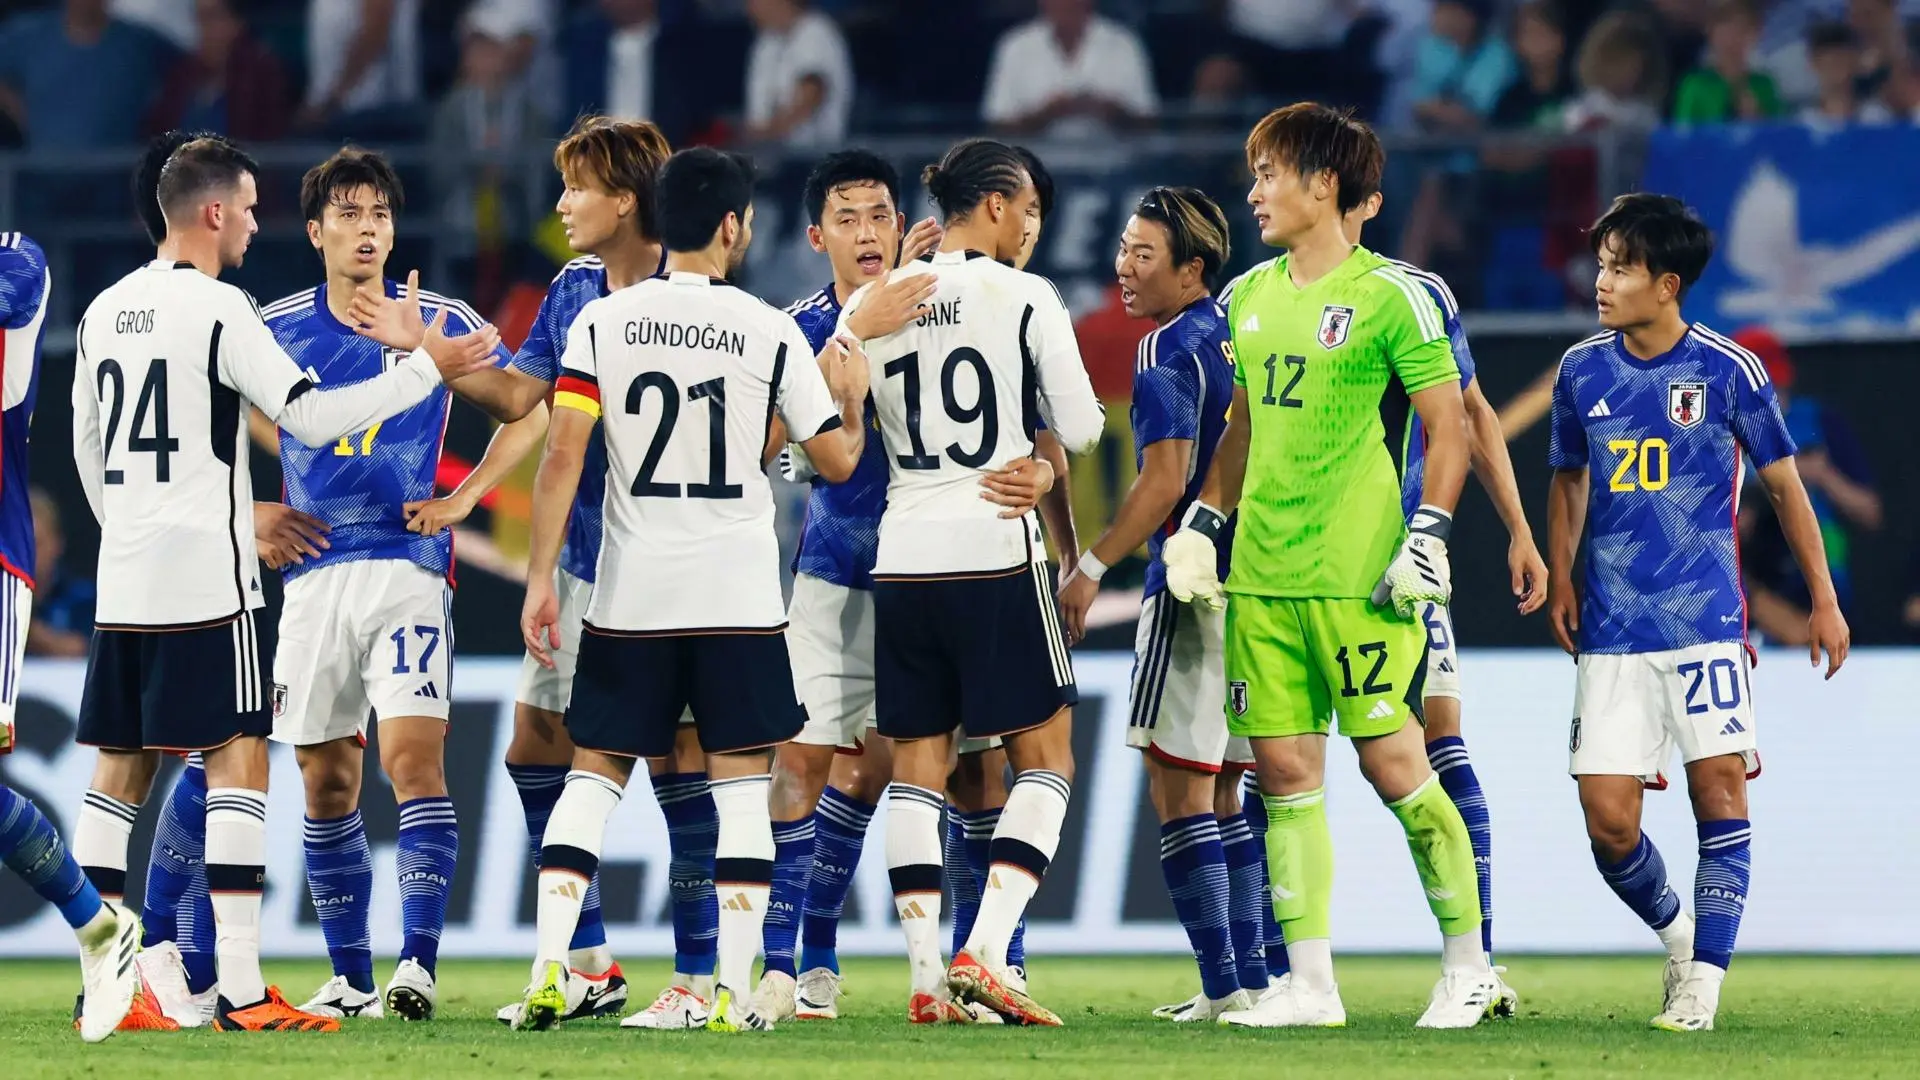 サッカーの競技性、歴代の日本代表と5バックとの関係。“それでも 